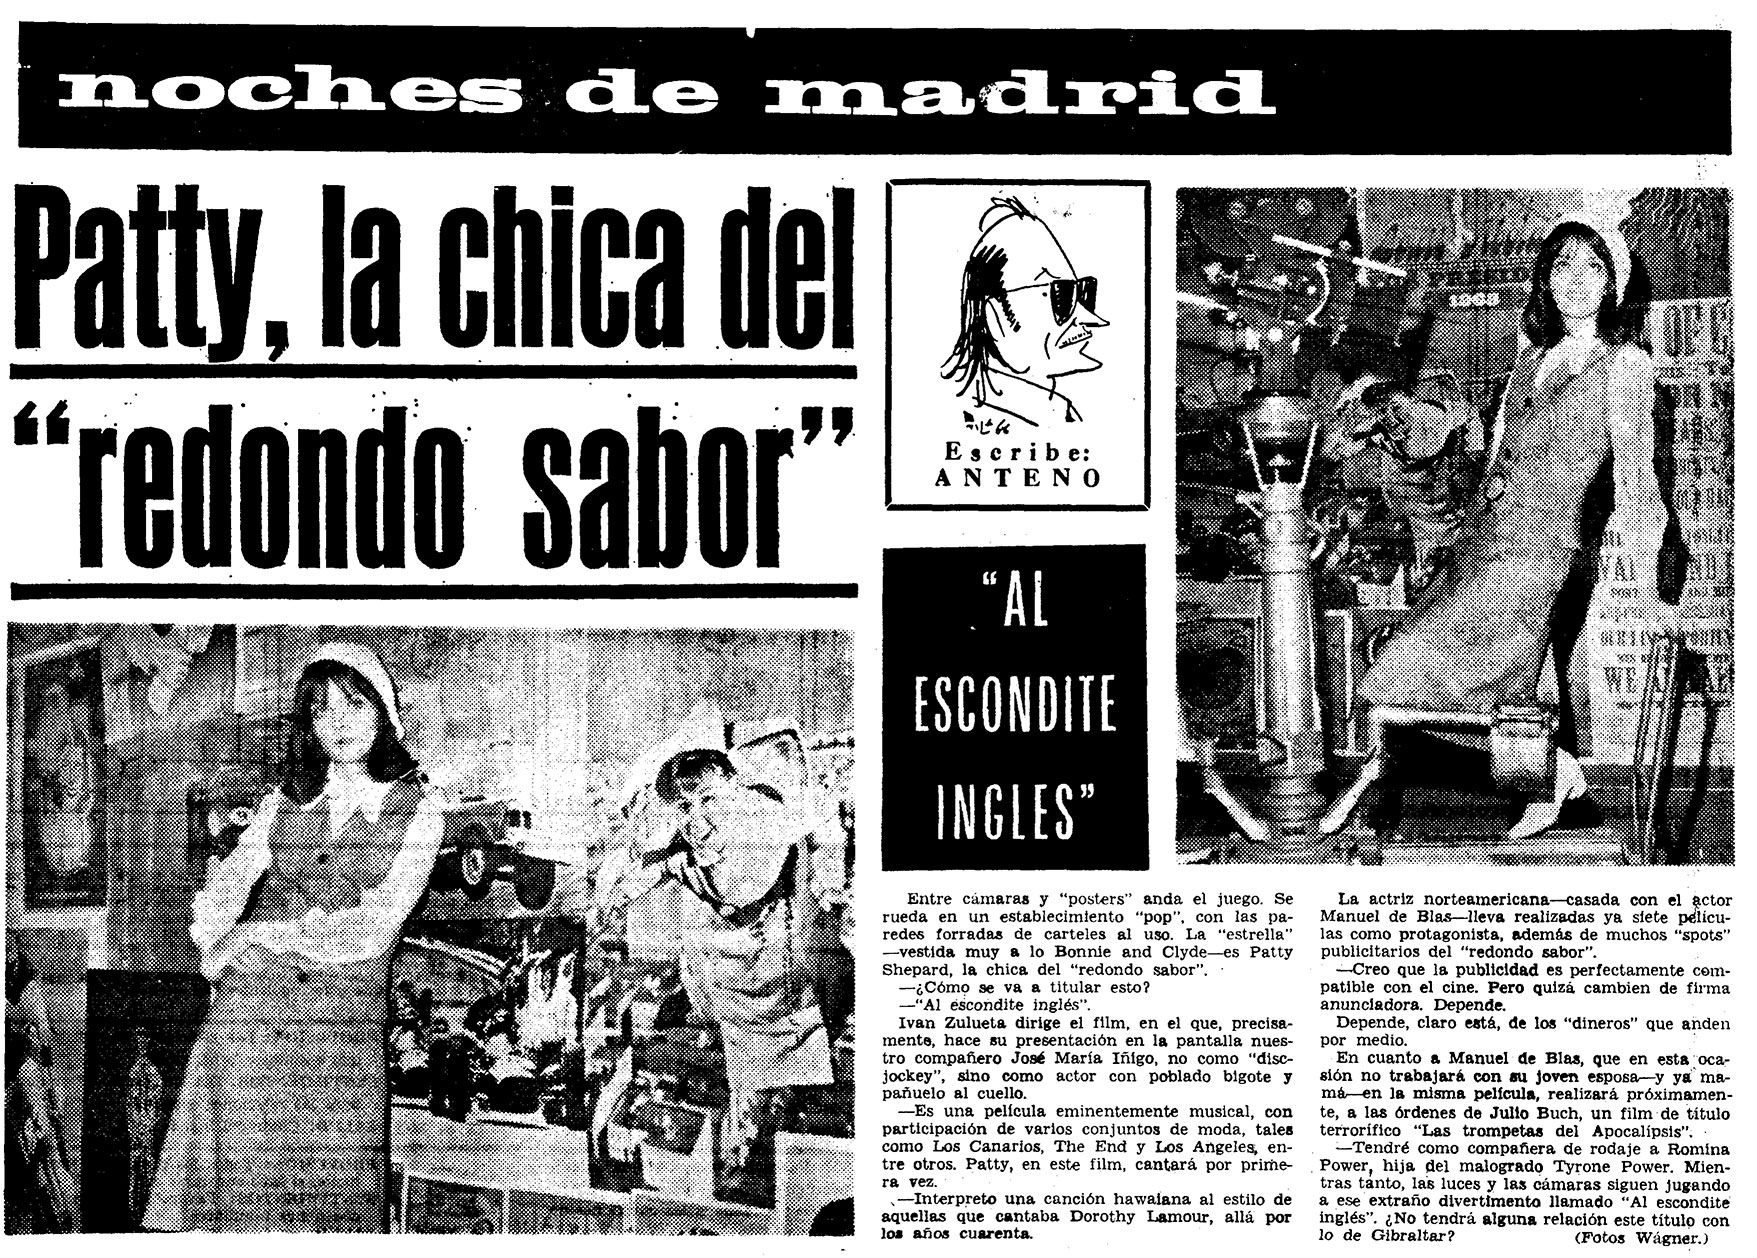 Rodaje de 'Un, dos, tres... al escondite inglés' en el diario Madrid (1968)